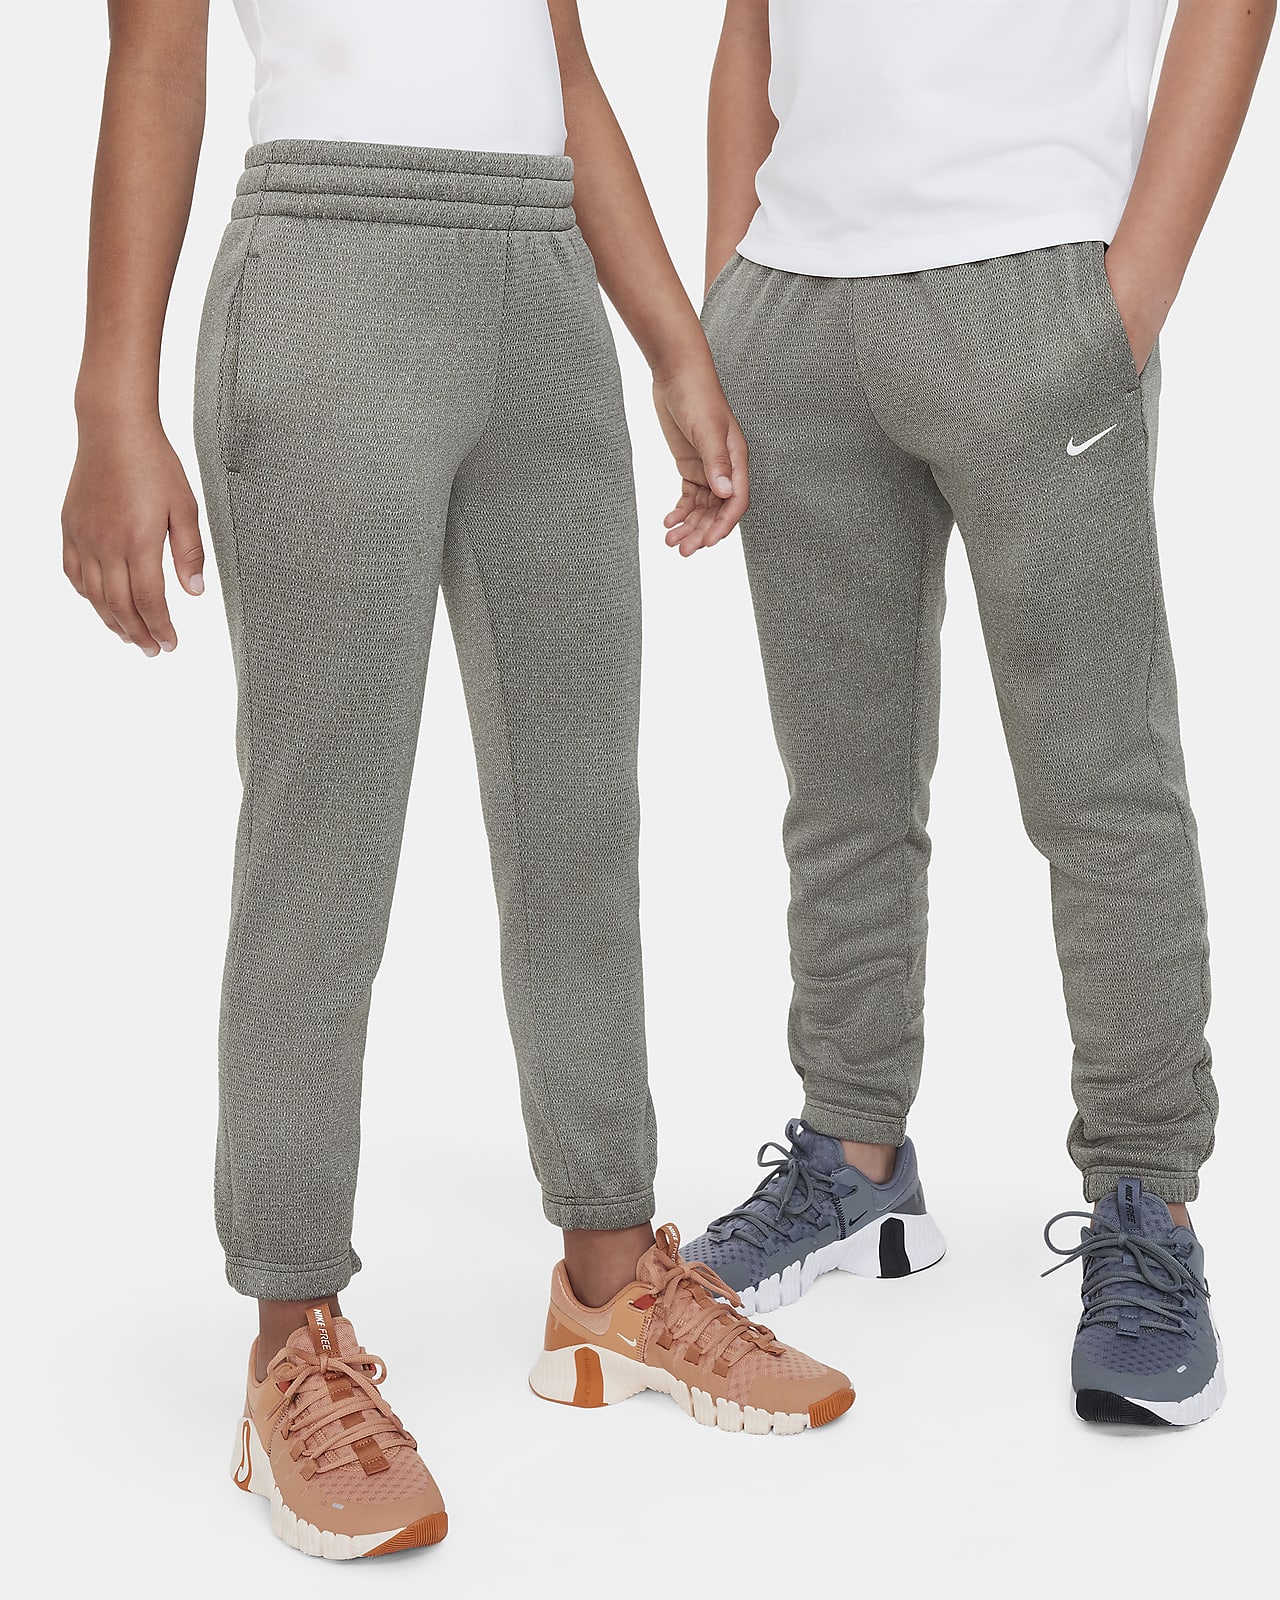 Nike Therma-FIT Pantalons per a l'hivern - Nen/a